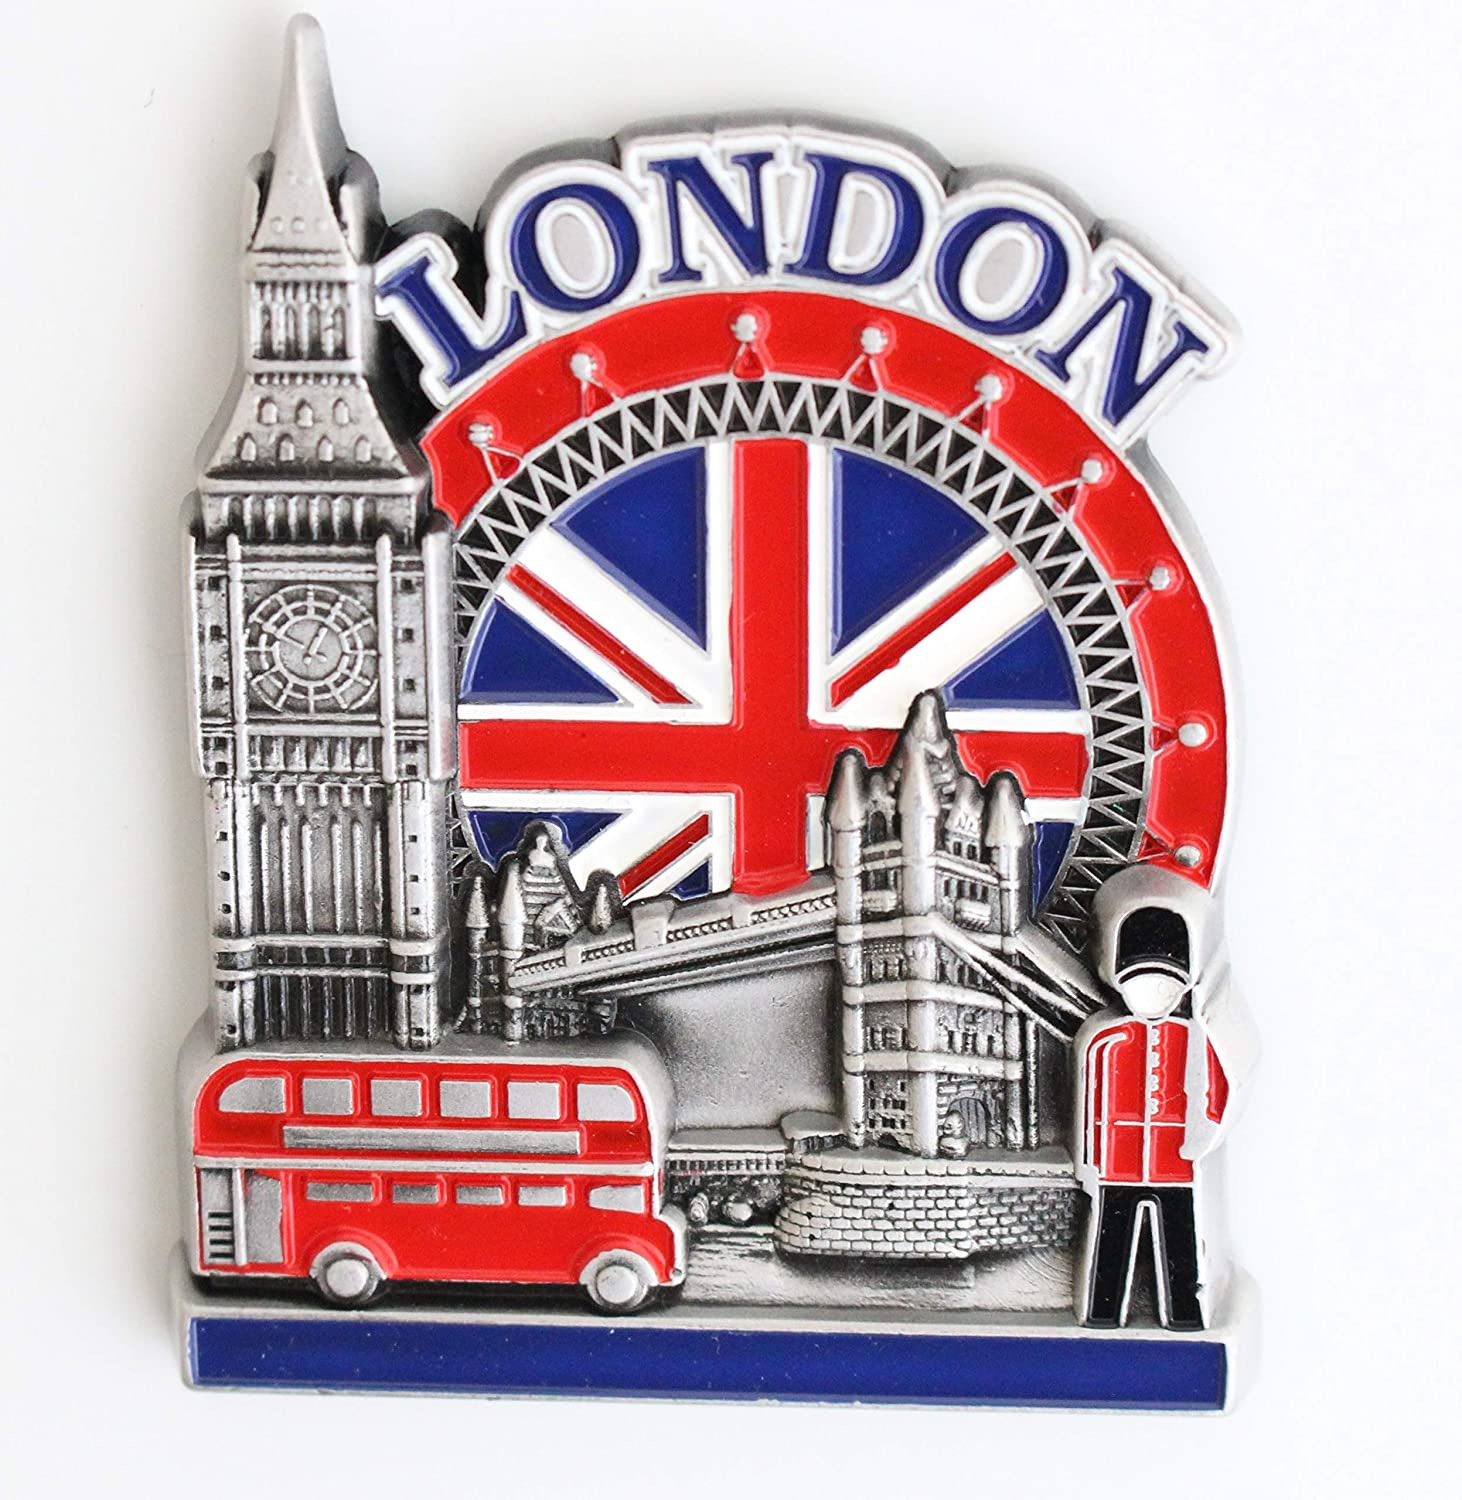 England London Metal Fridge Magnet Unique Design Home Kitchen Decorative Travel